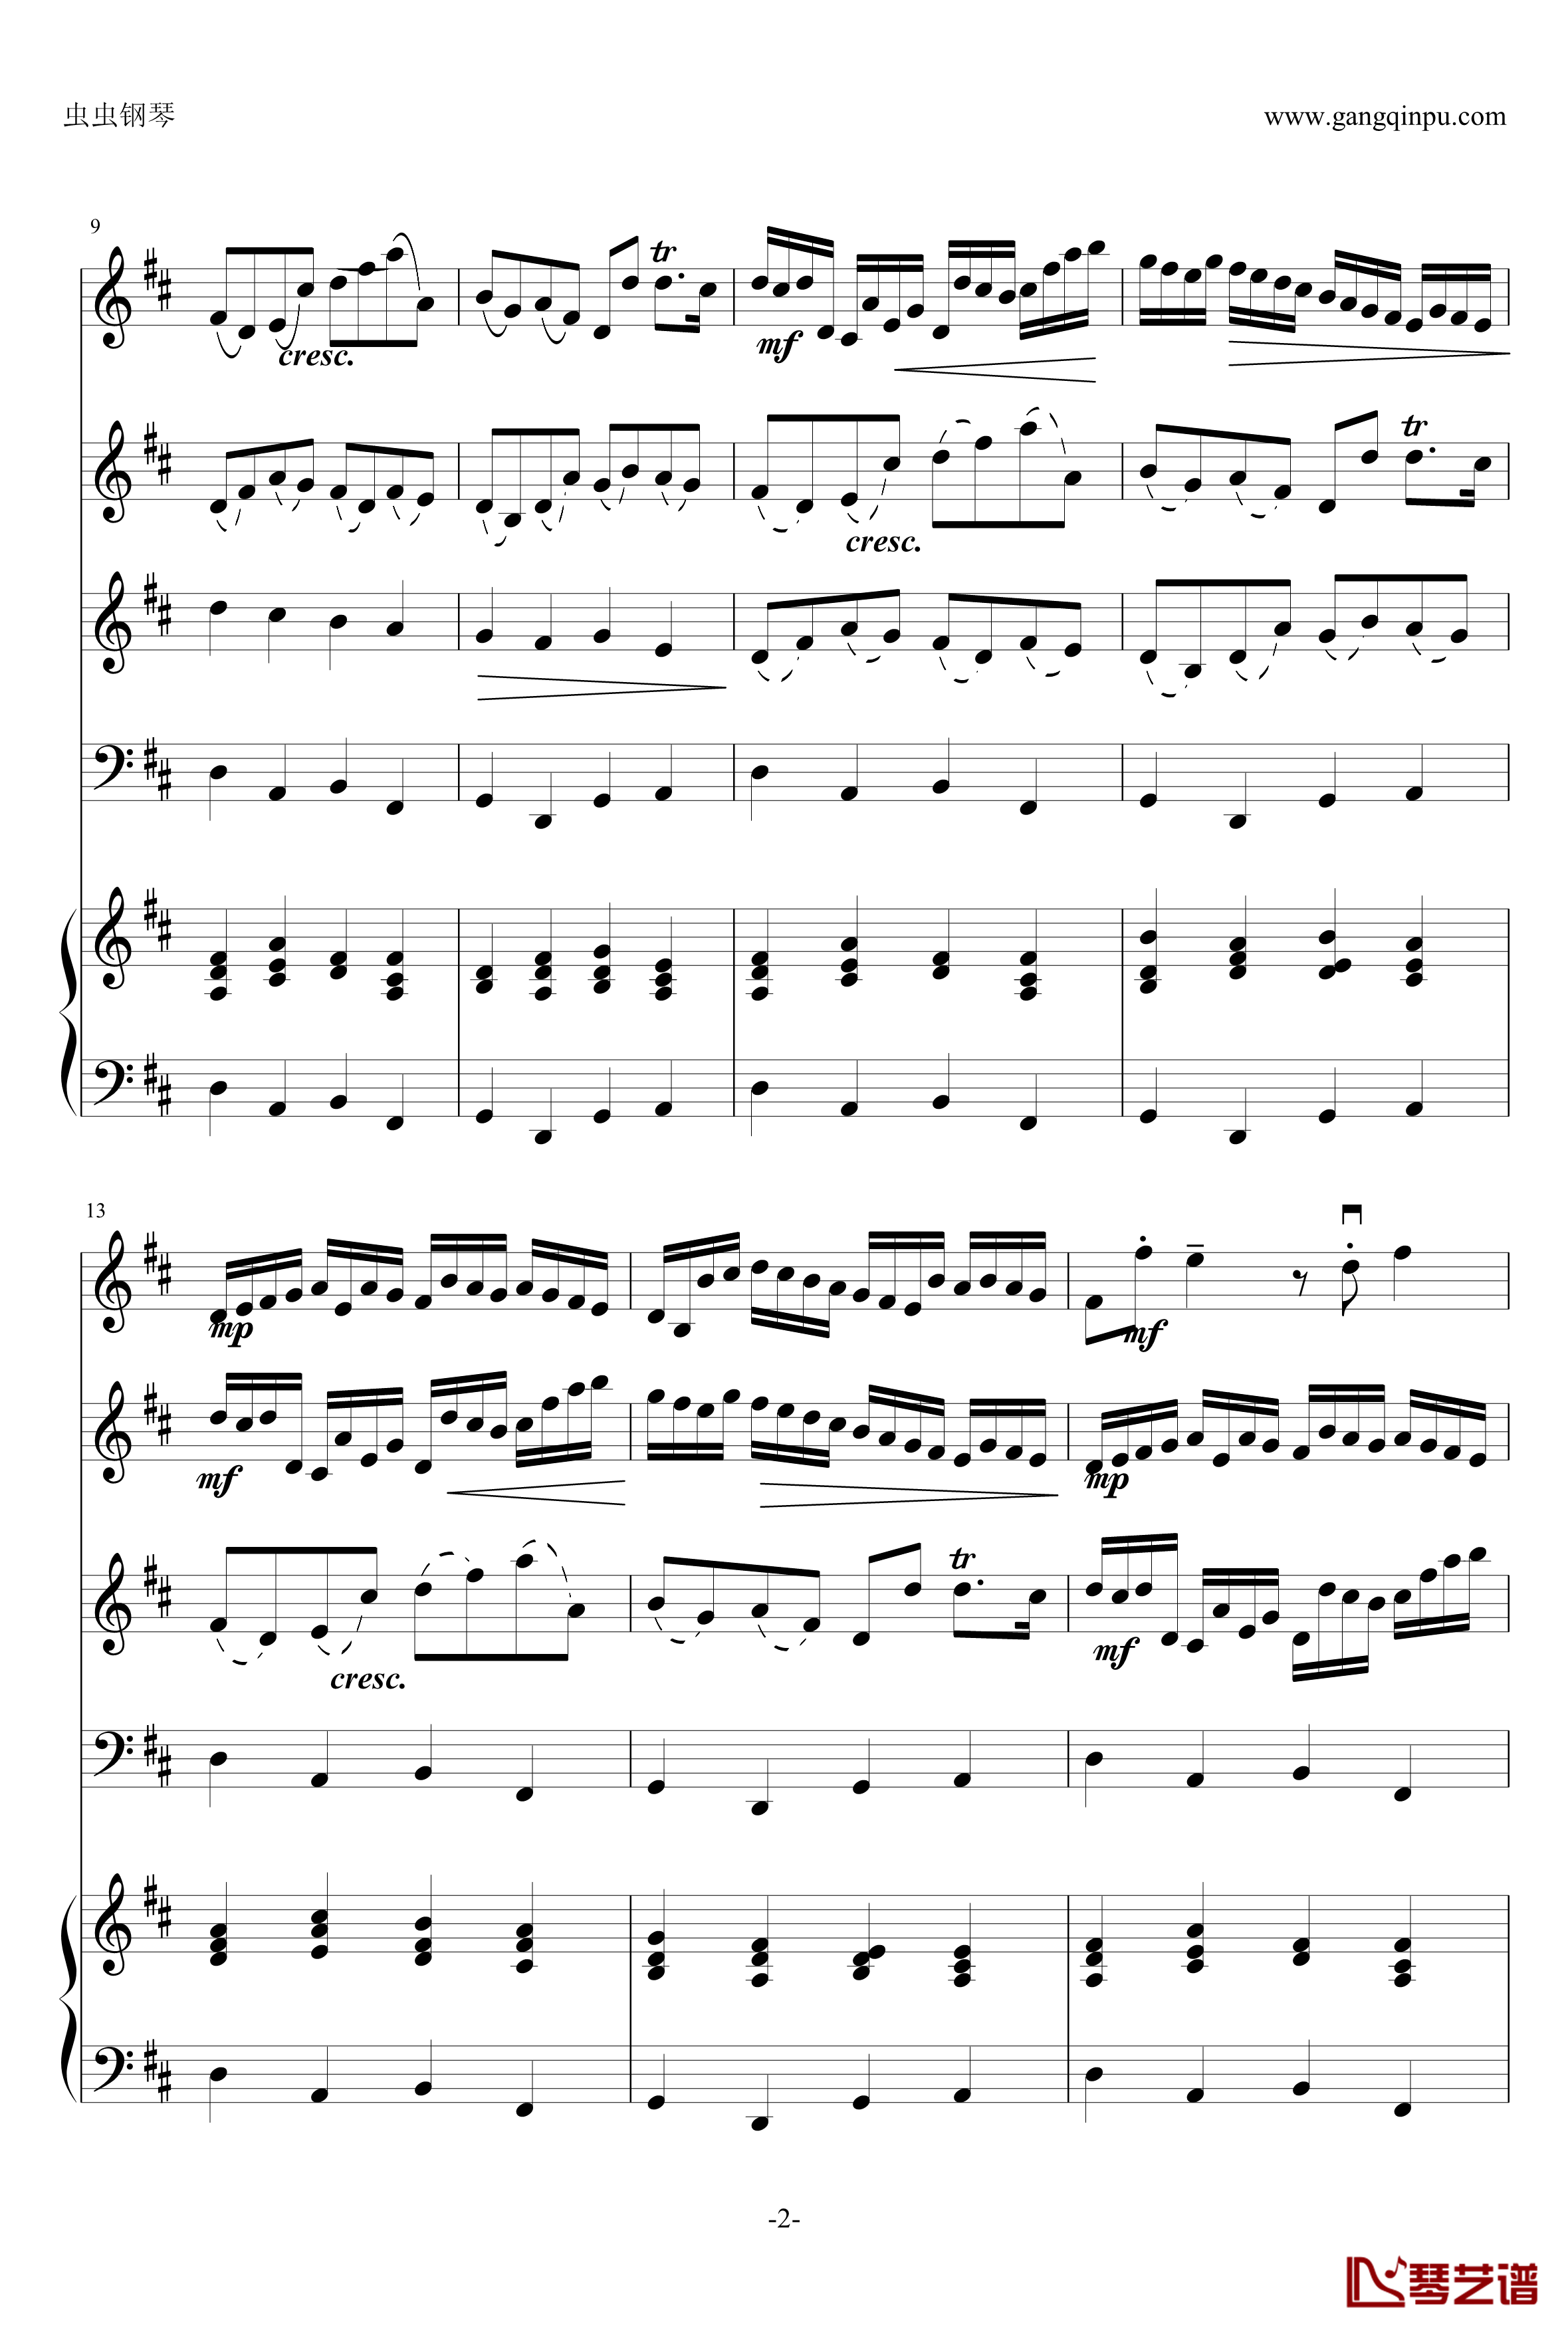 卡农钢琴谱-原版引进-帕赫贝尔-Pachelbel2